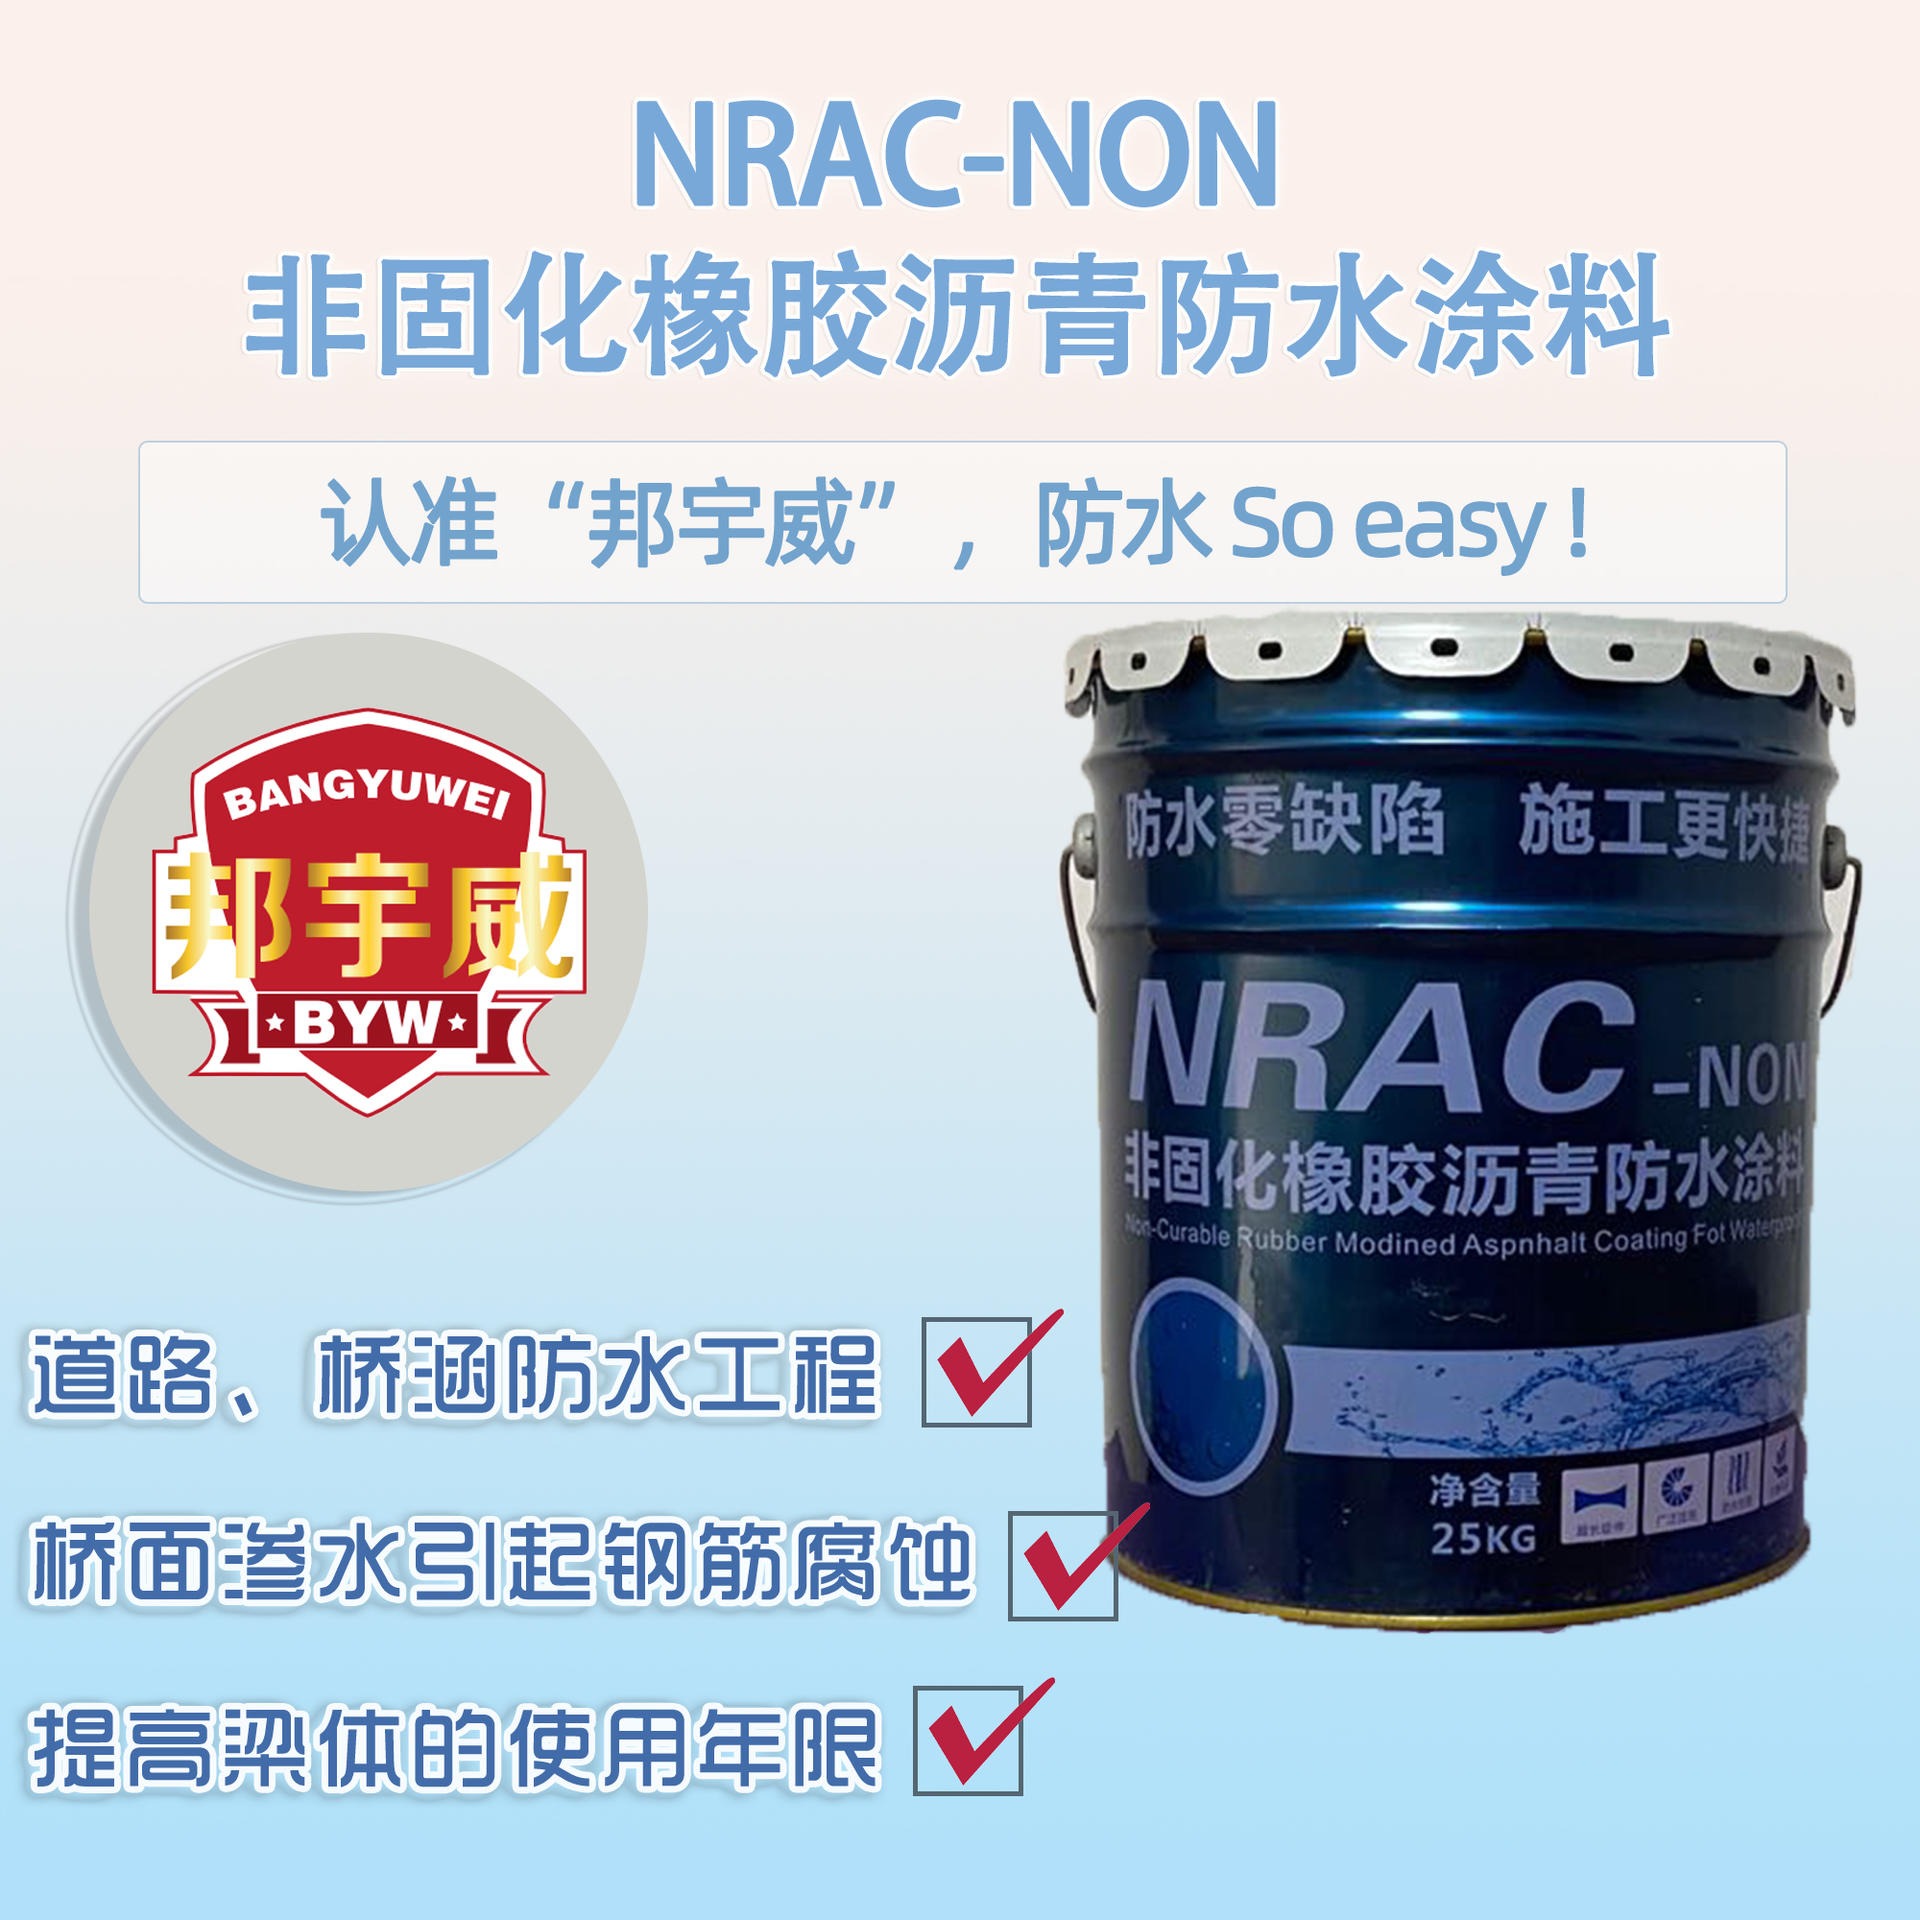 沥青防水 邦宇威NRAC-NON非固化橡胶沥青防水涂料 质好价优 效果显著图片